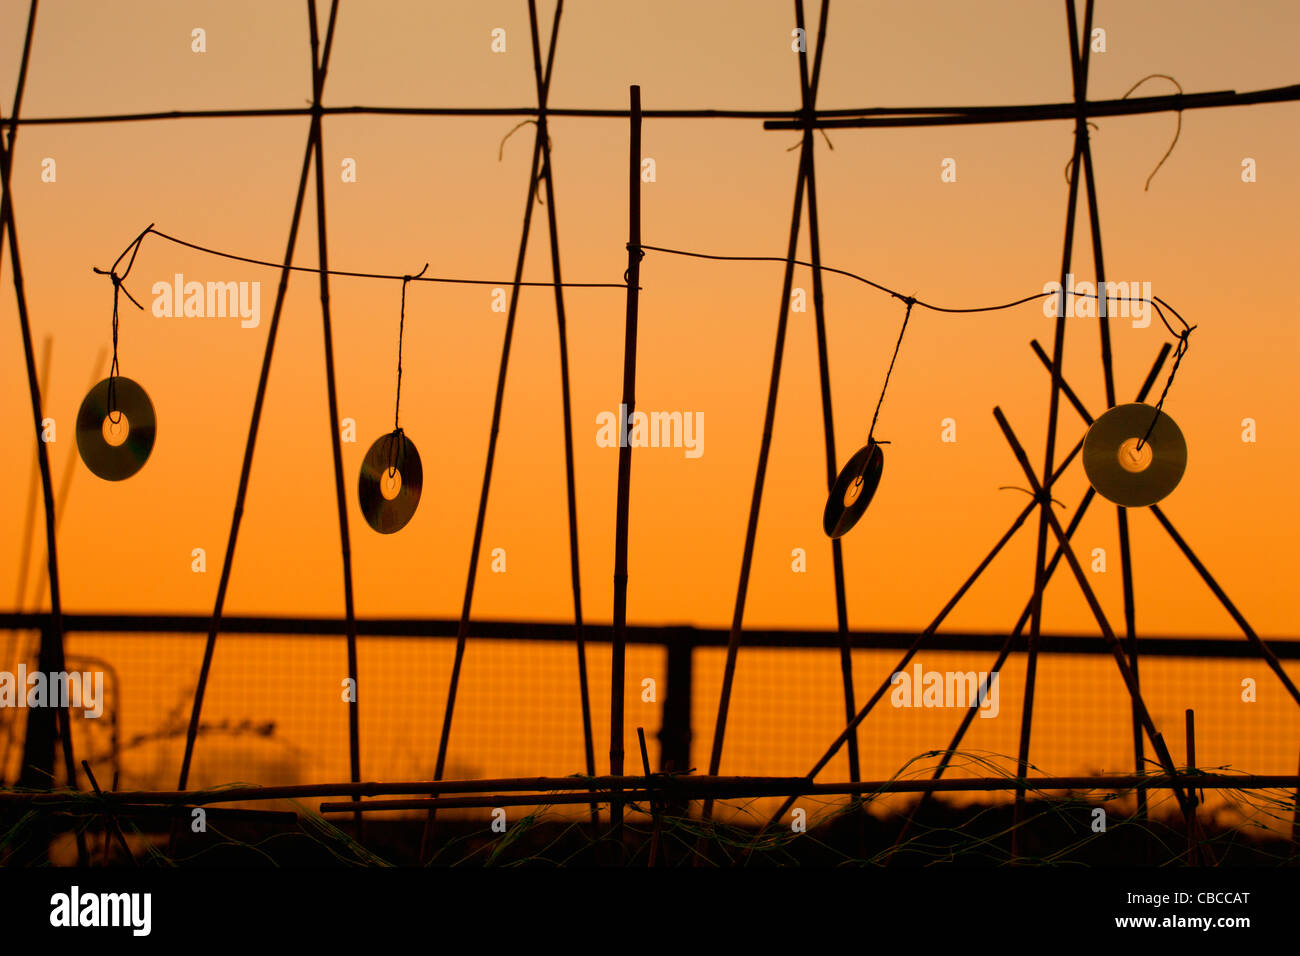 Orange sunset Silhouette, Vogel Nageltiereverscheucher, vier Musik-CD, weht in den Wind, eine Zuteilung von Bambus Garten Stöcken hängen. Stockfoto